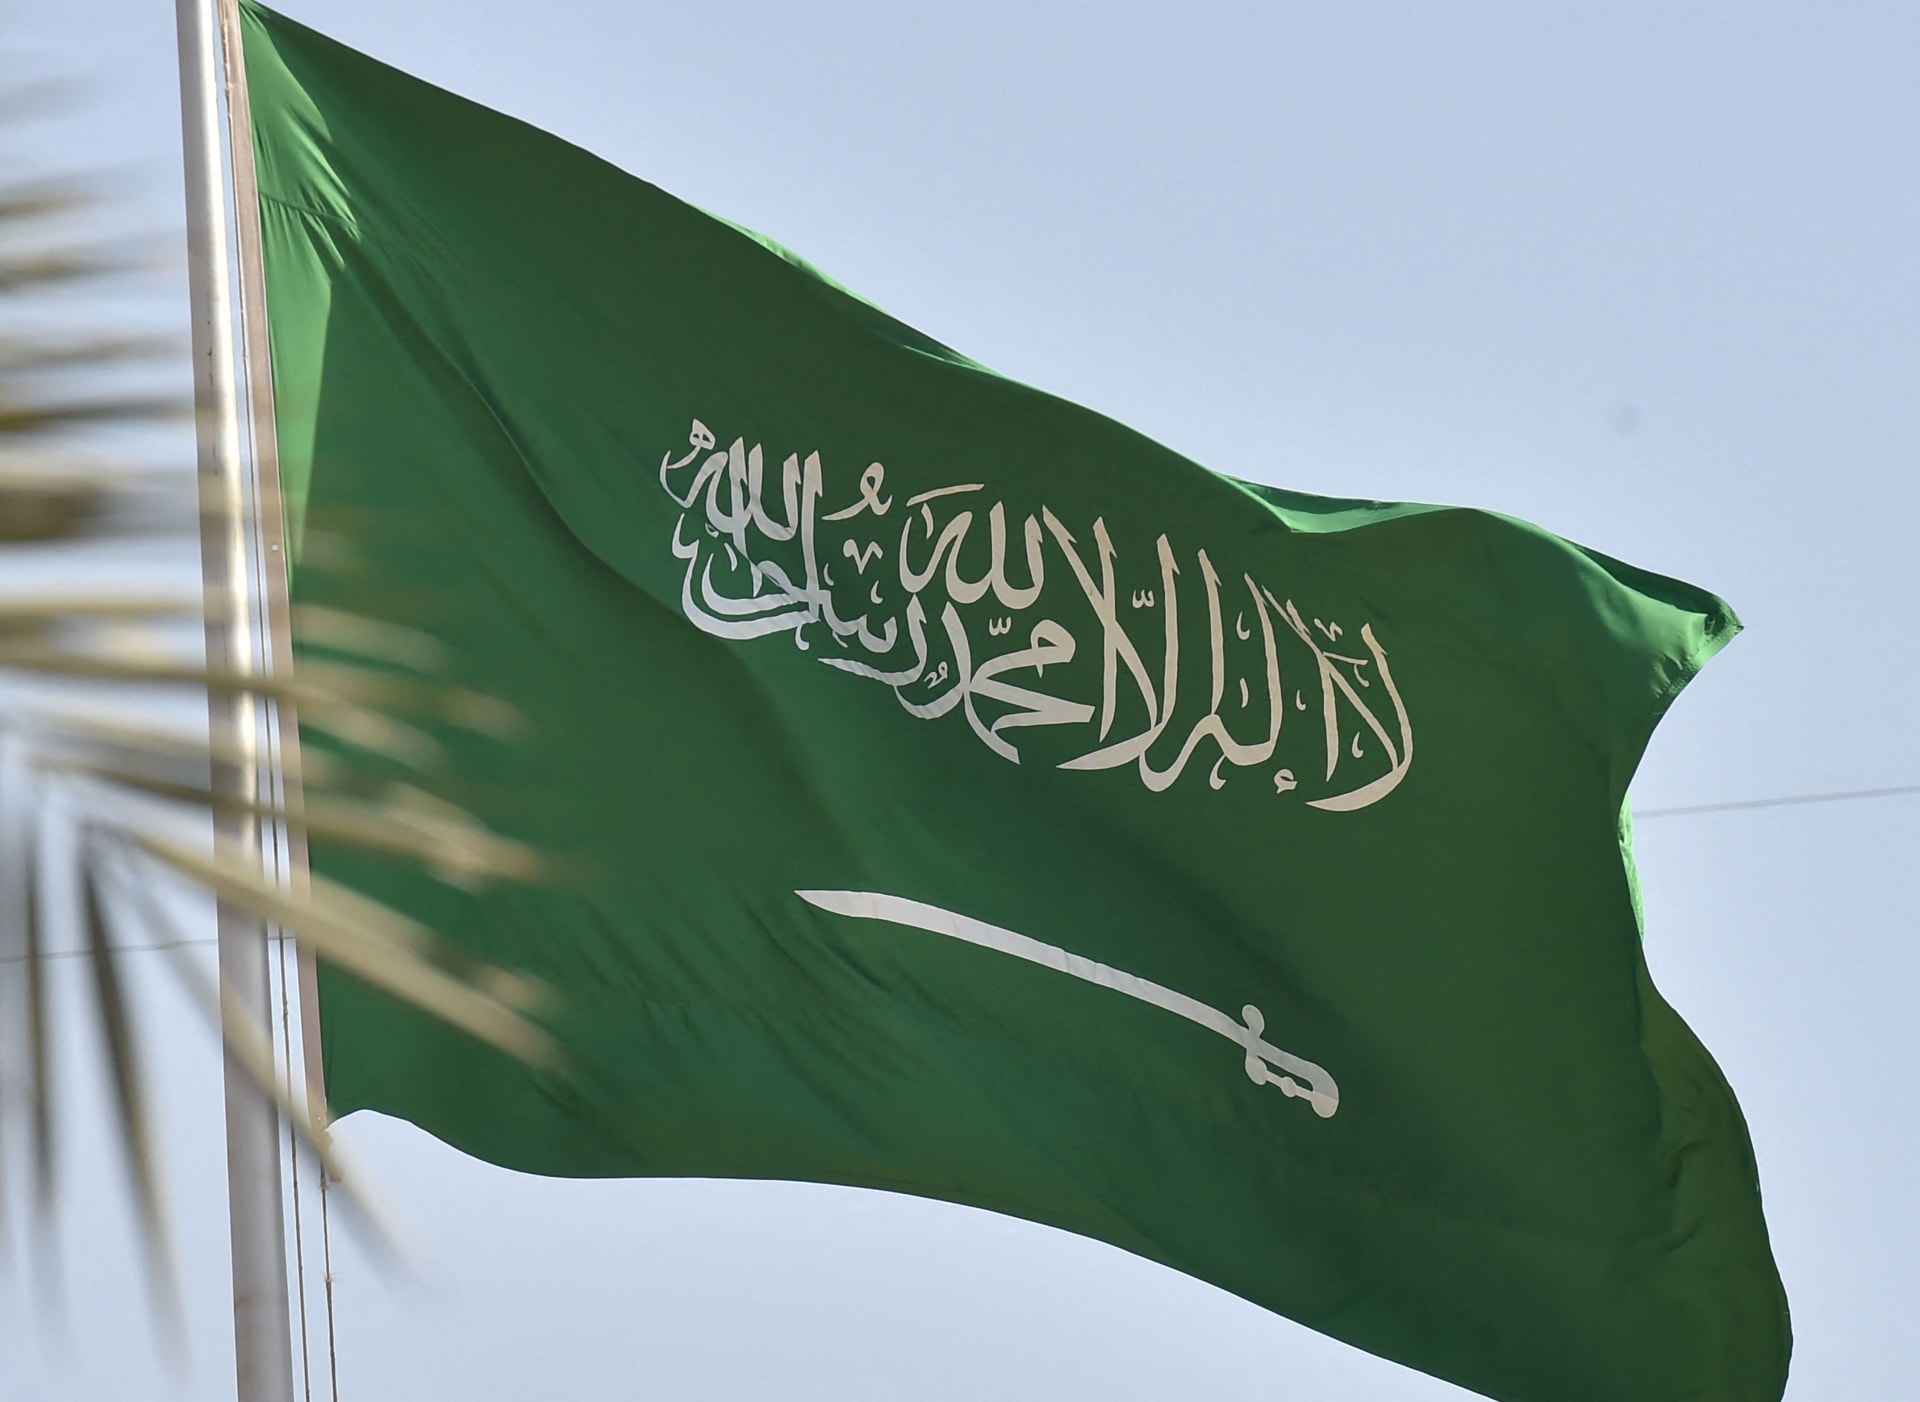 السعودية تعلن تعرض مبنى الملحقية الثقافية في السودان "للتخريب من قبل مسلحين"